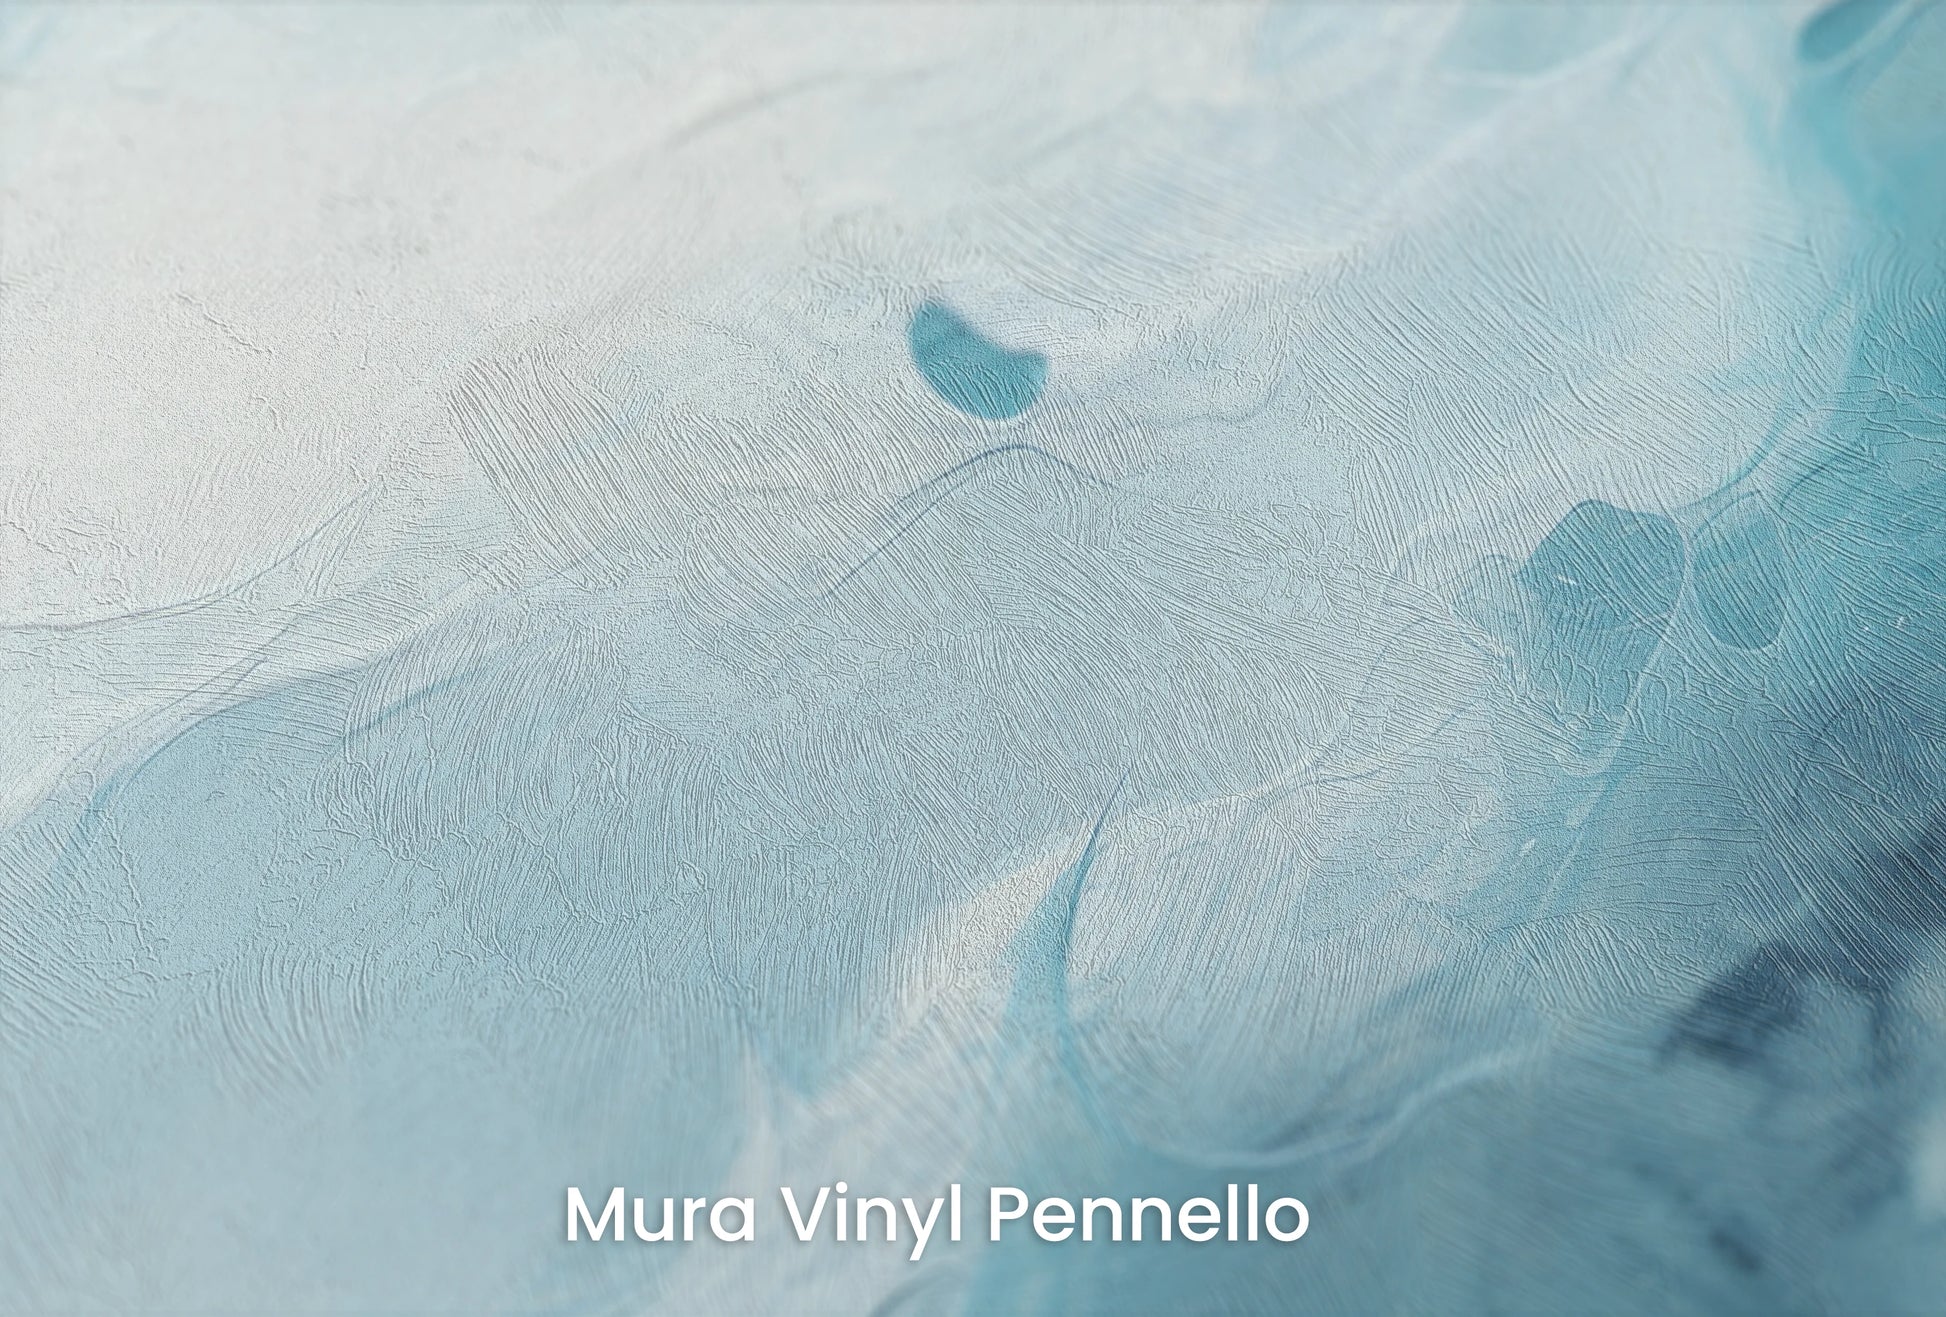 Zbliżenie na artystyczną fototapetę o nazwie Neptune's Whirl na podłożu Mura Vinyl Pennello - faktura pociągnięć pędzla malarskiego.